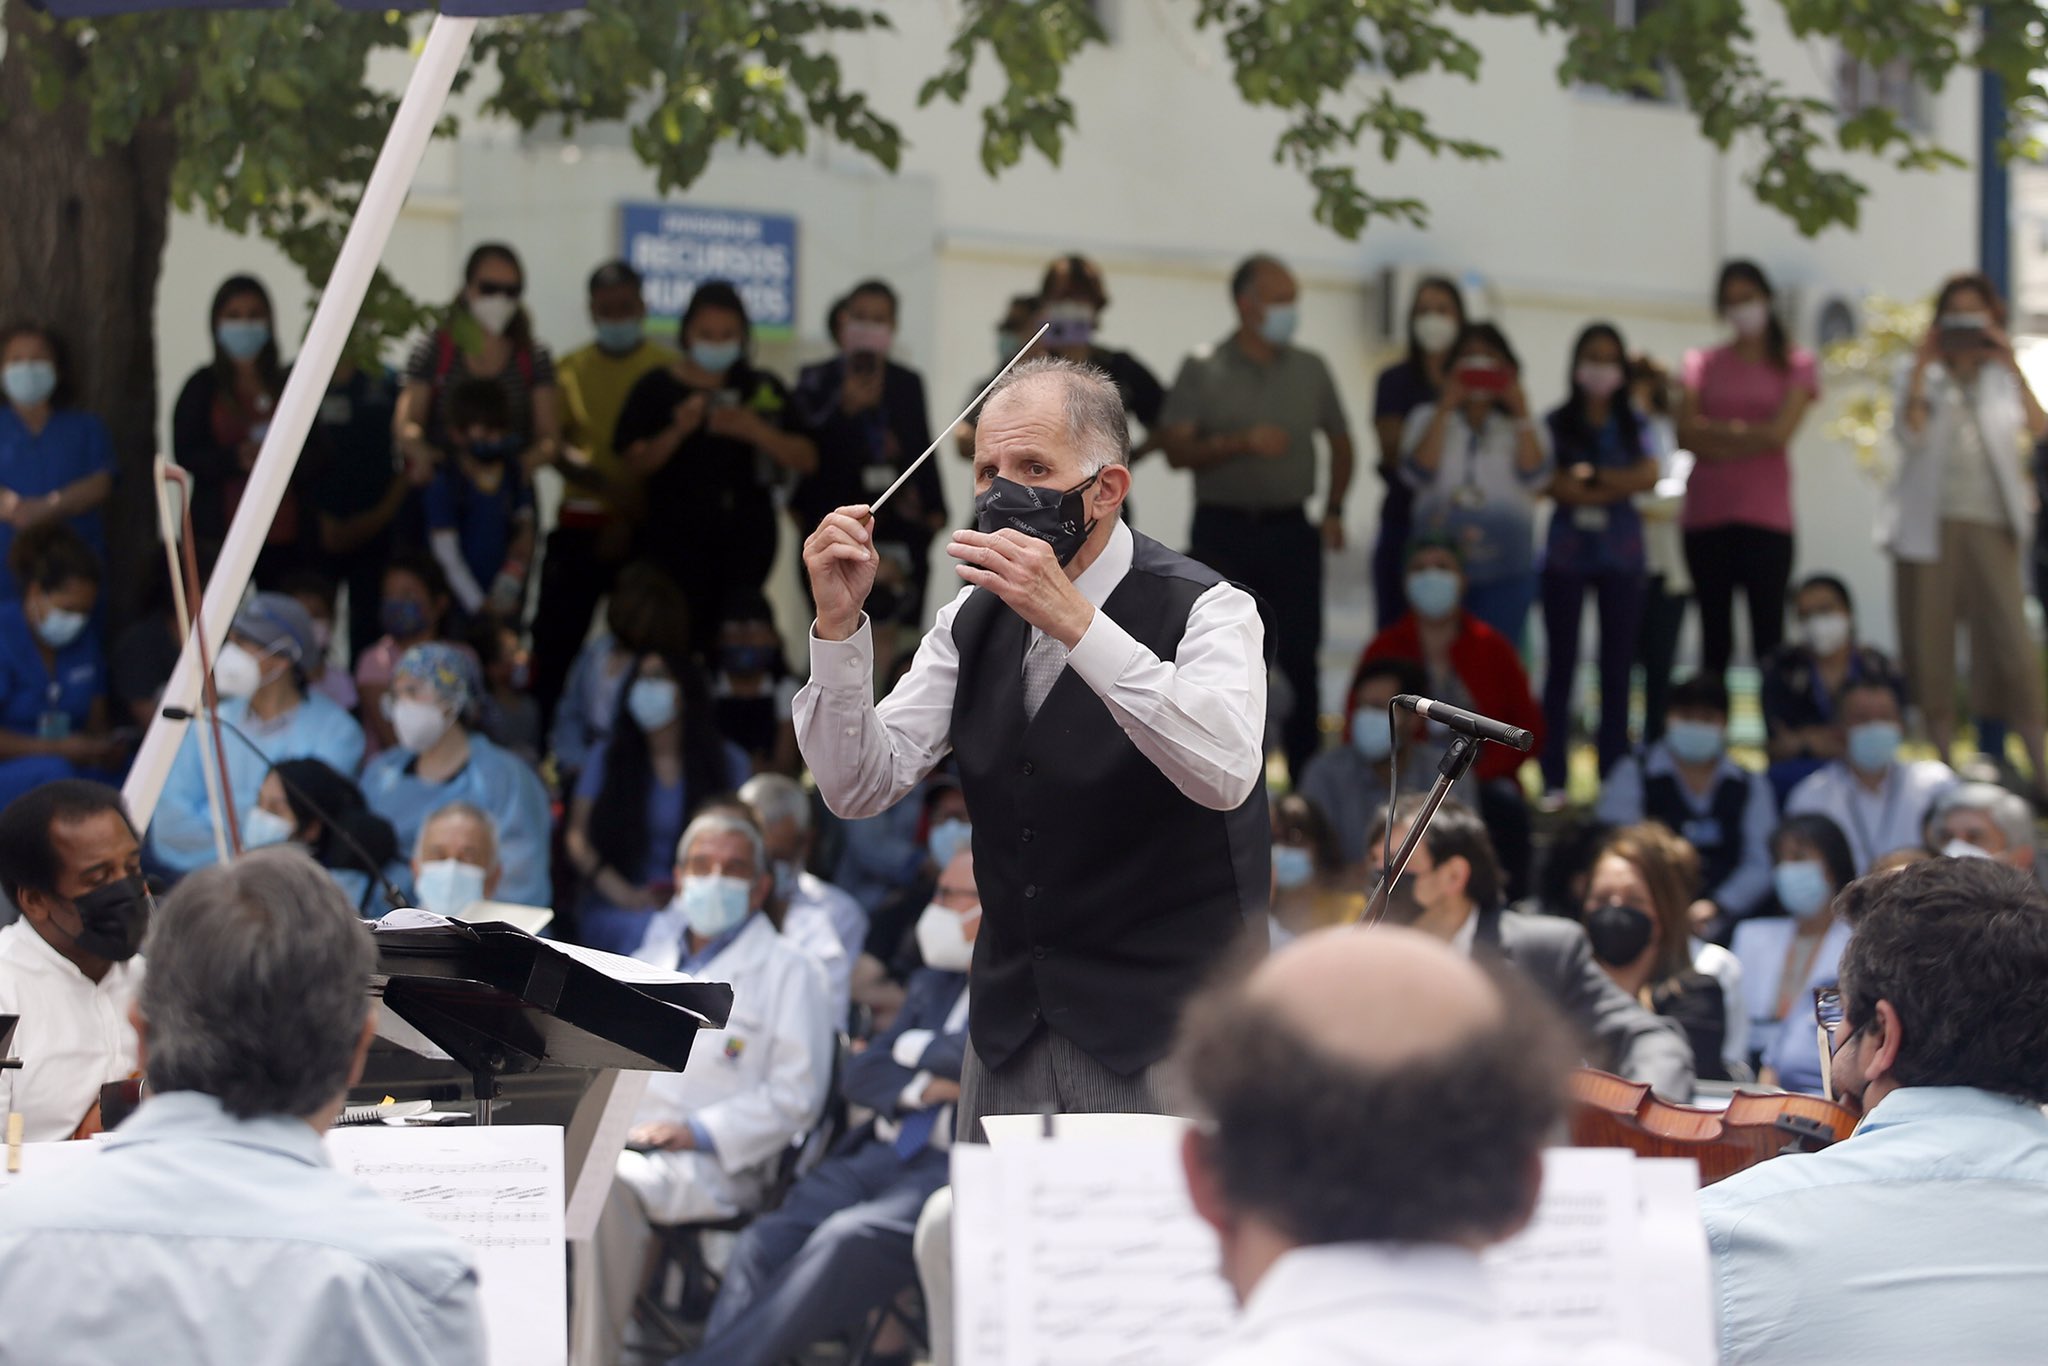  Orquesta Sinfónica Nacional de Chile homenajeó a los y las trabajadoras de la salud del país con concierto